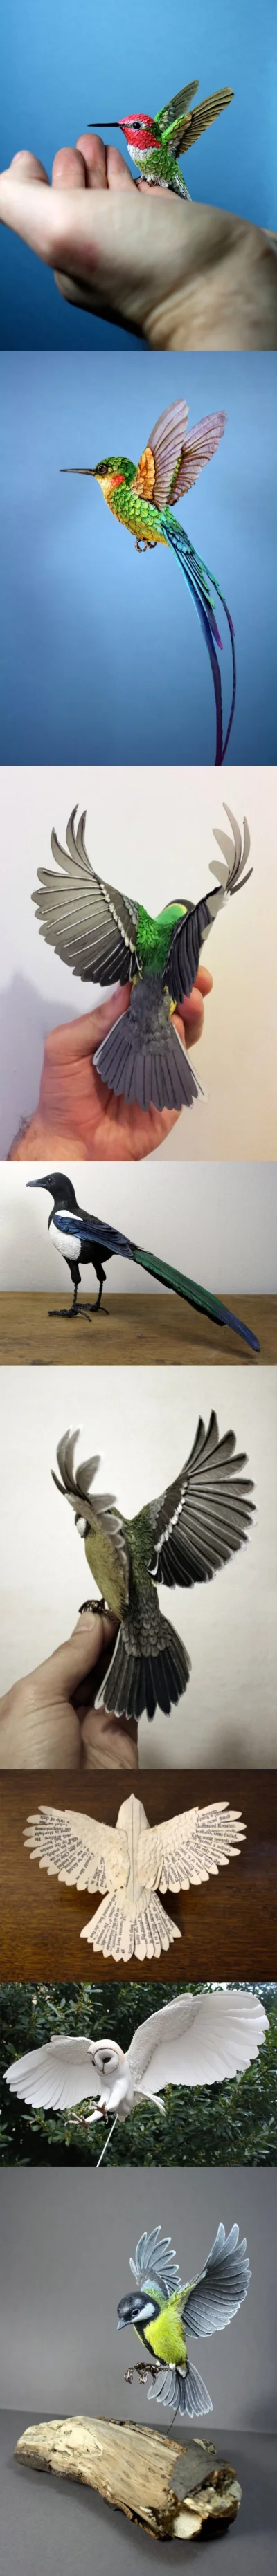 likk - #sztuka #ptaki #wycinanki #art 

Ptaki z papieru by Zack Mclaughlin